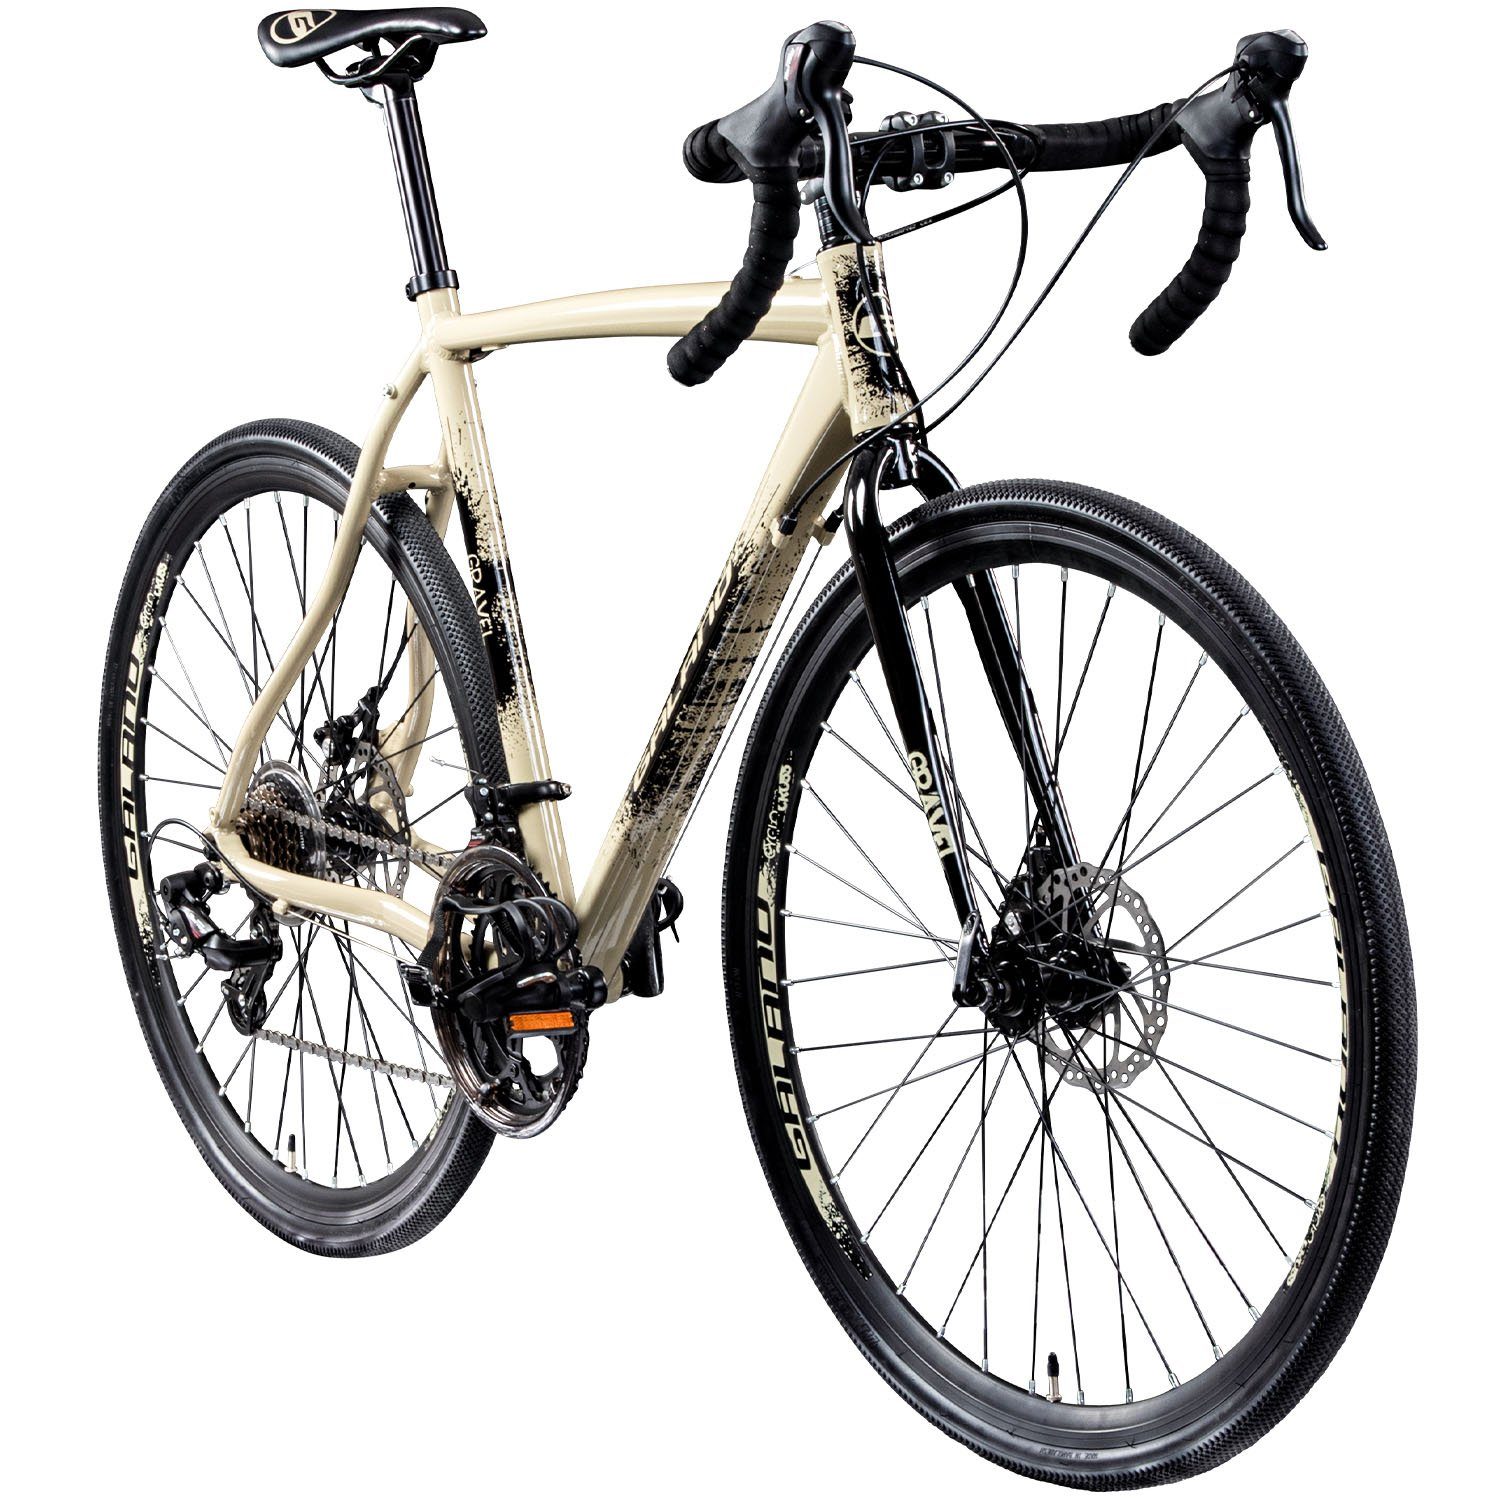 Galano Cyclocross-Rad Gravel STI, 14 Gang, Kettenschaltung, Gravelbike für Damen und Herren 165-185cm Crossbike Fahrrad Cyclocross creme/anthrazit